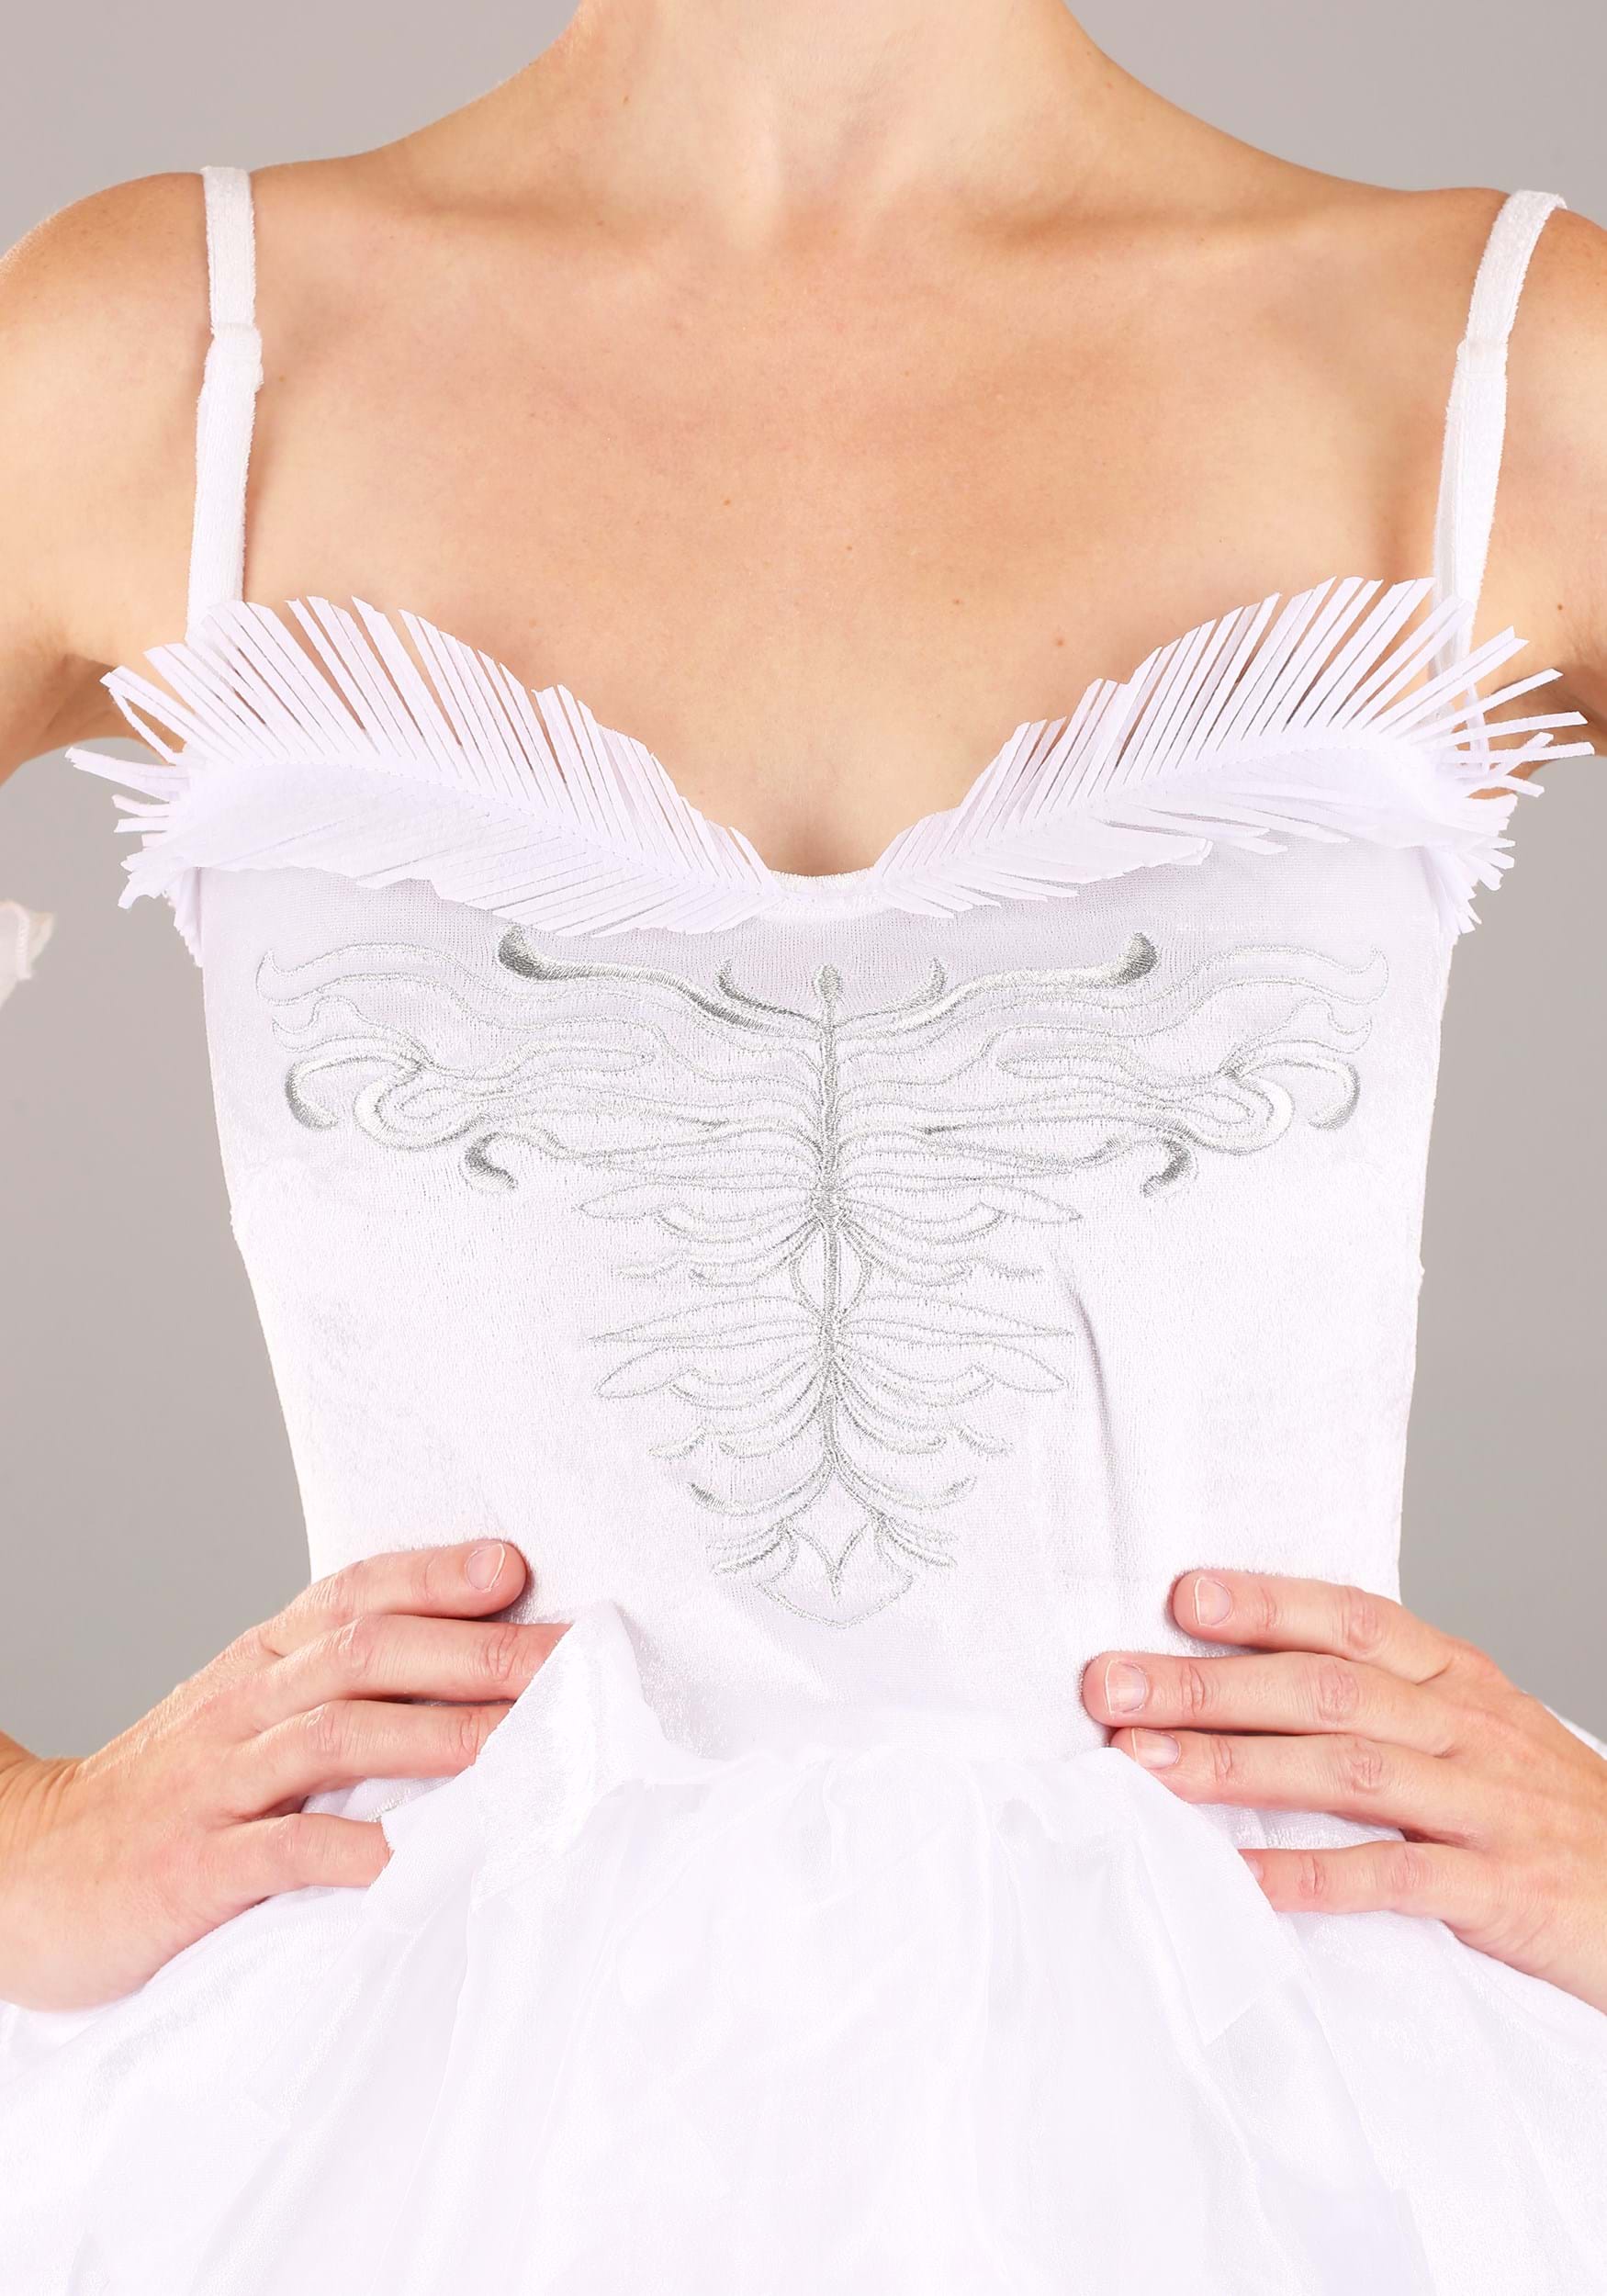 White Swan Fancy Dress Costume